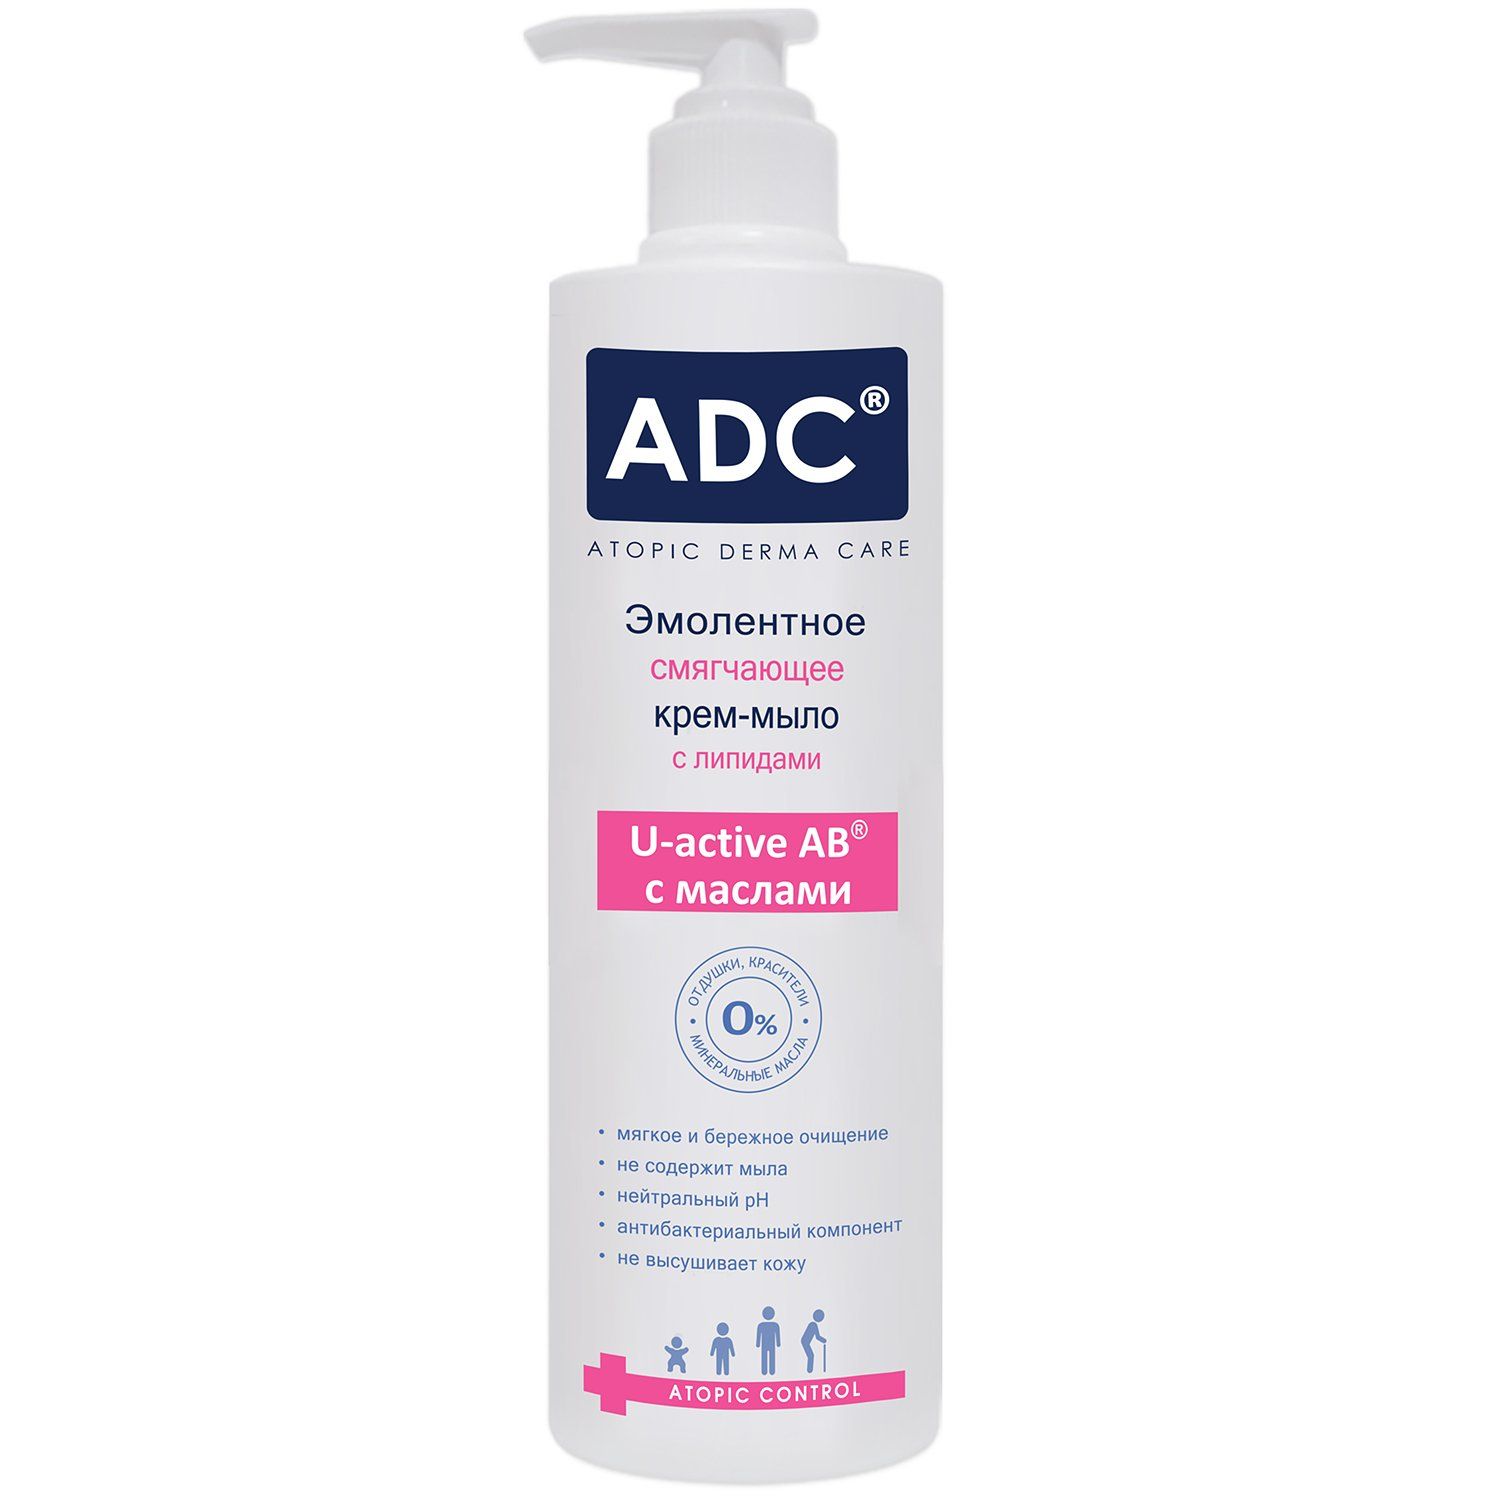 ADC крем-эмульсия питательная гидрорегулирующая для детей. ADC гель эмолентный atopic Control для купания и мытья волос. Гель для купания для атопичной кожи. Atopic для купания